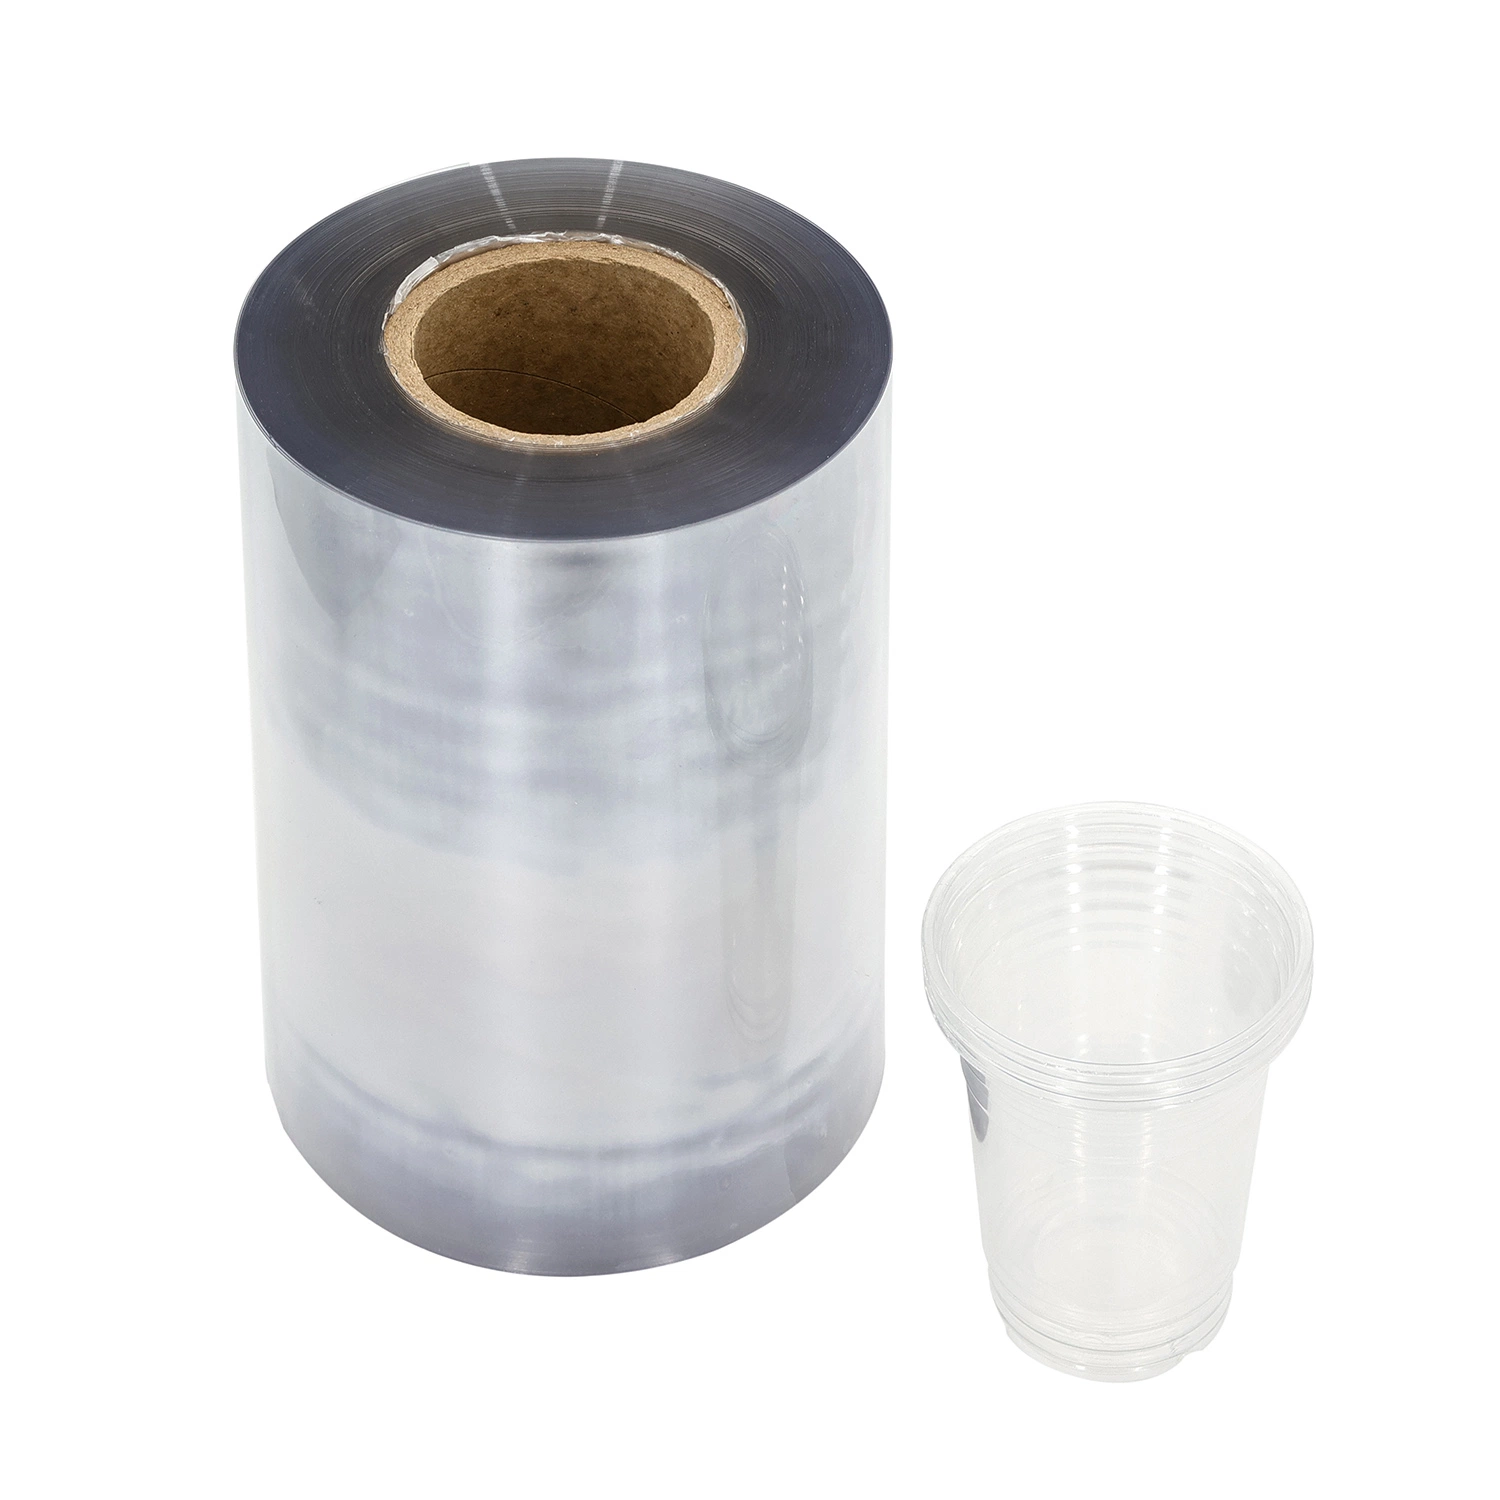 Película transparente PET PVC PP PLA rolos de folha de plástico Filme película de Bioplásticos transparentes para embalagem farmacêutica/alimentar